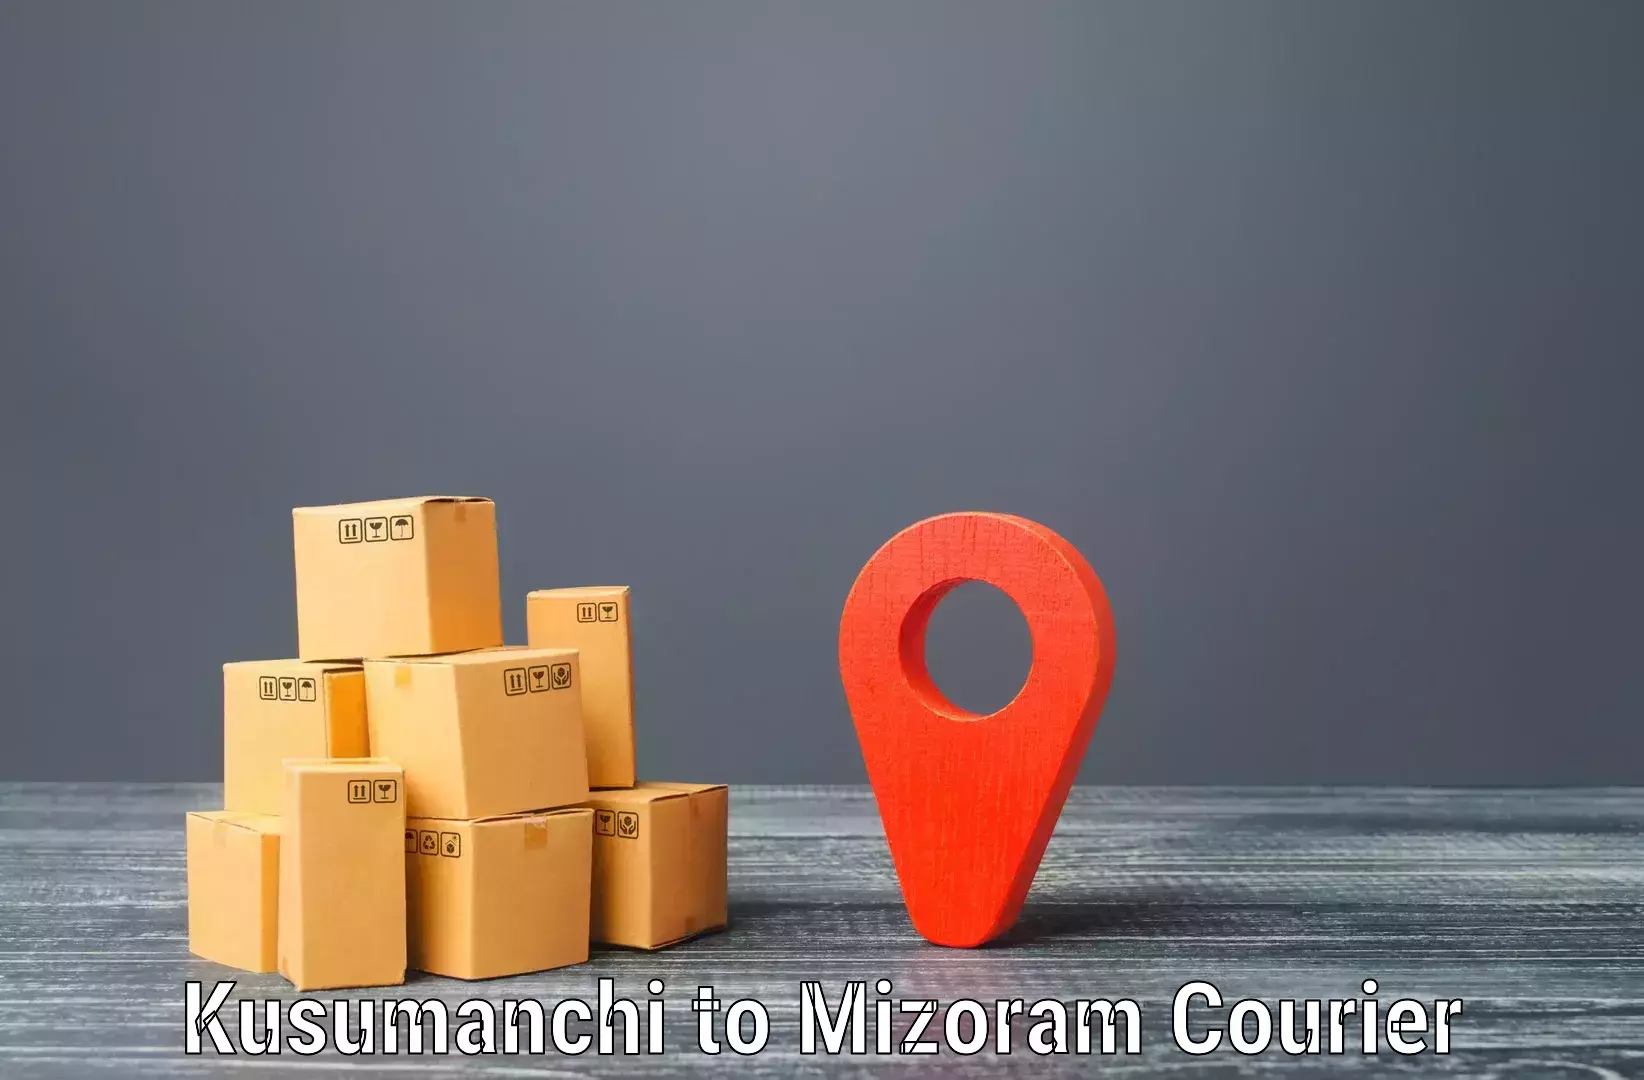 Secure shipping methods Kusumanchi to Thenzawl